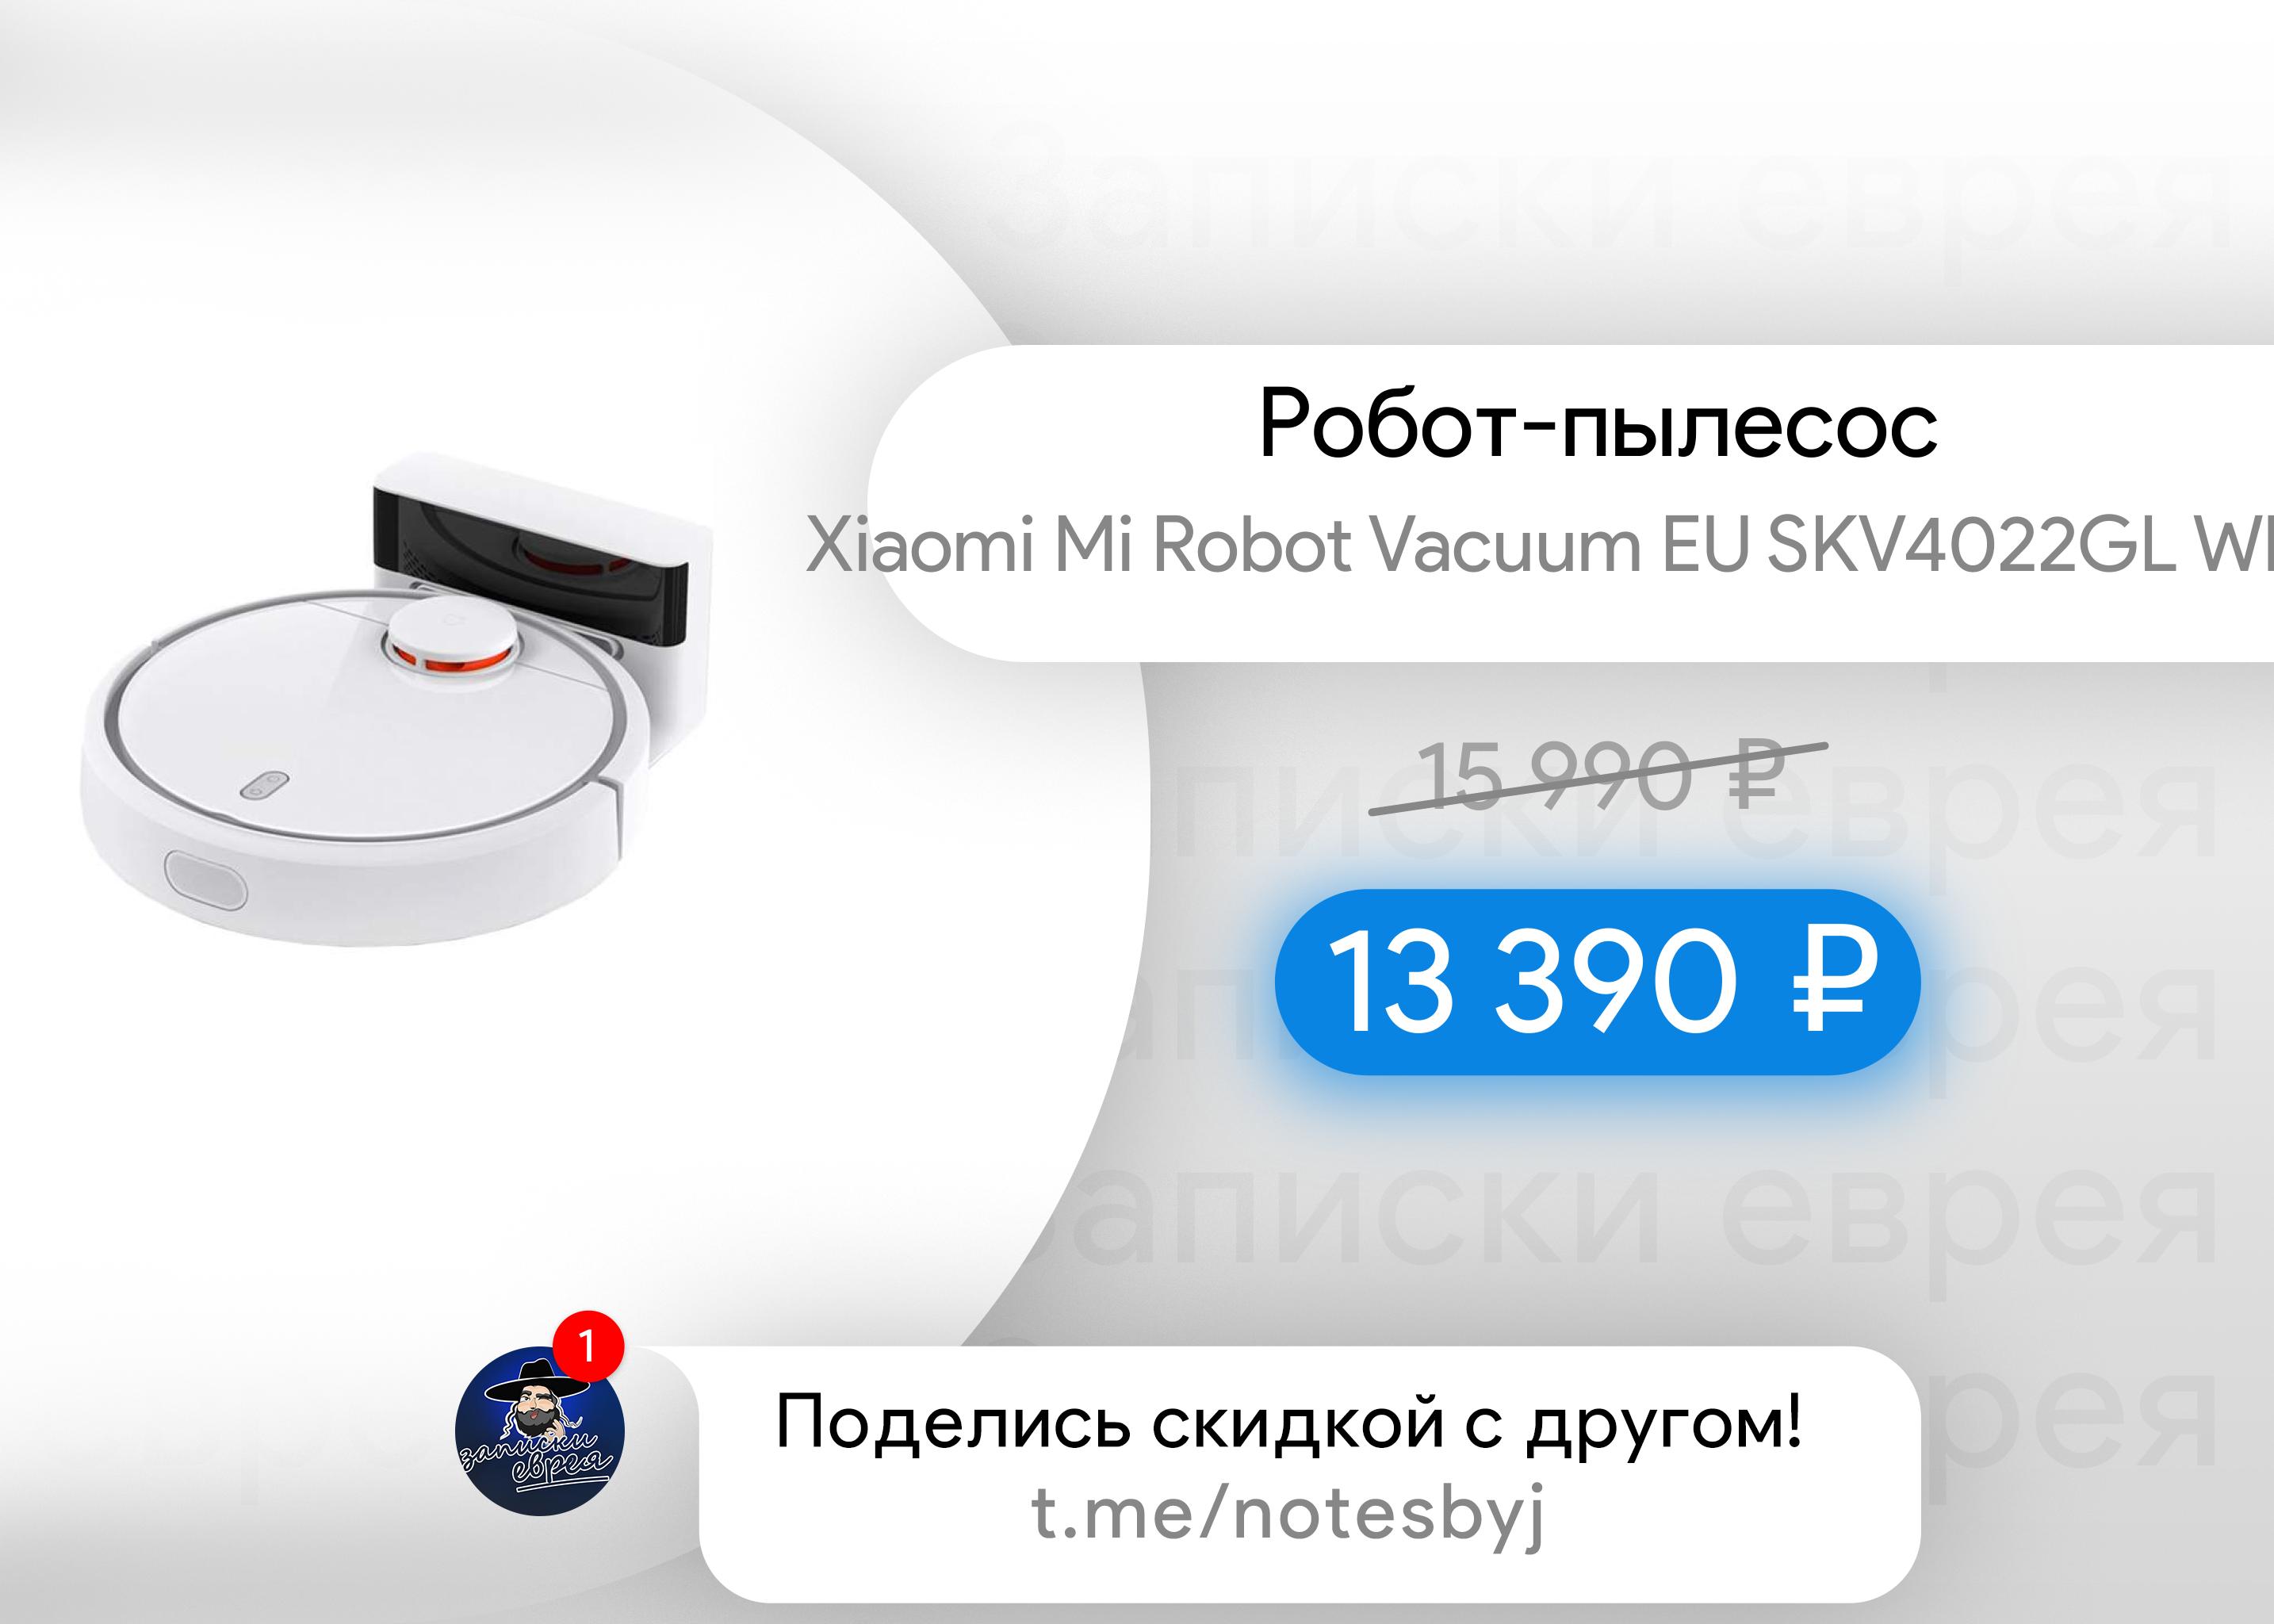 Xiaomi Mi Robot Vacuum Eu Skv4022gl